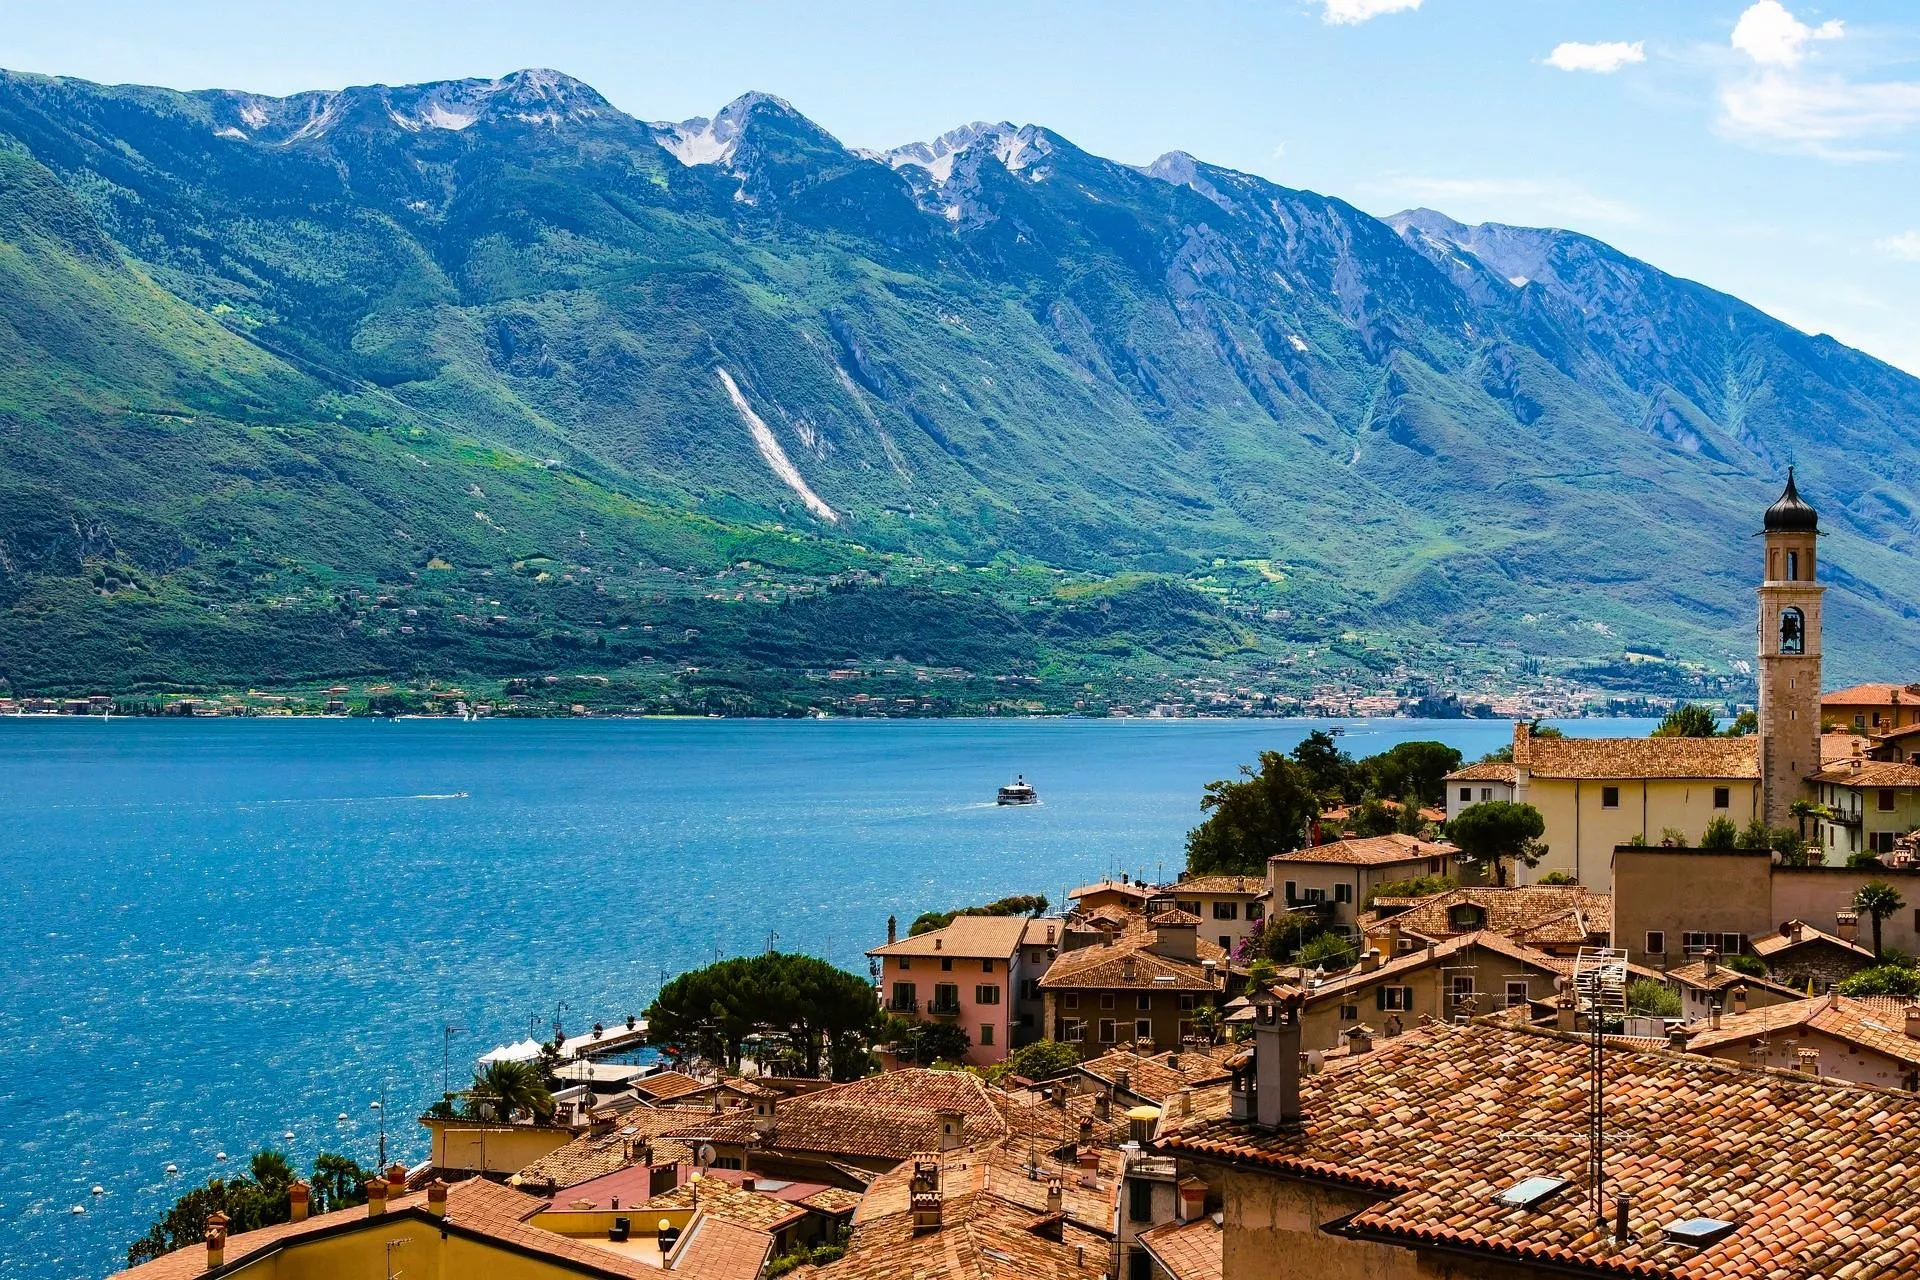 Explorez le plus grand lac d'Italie